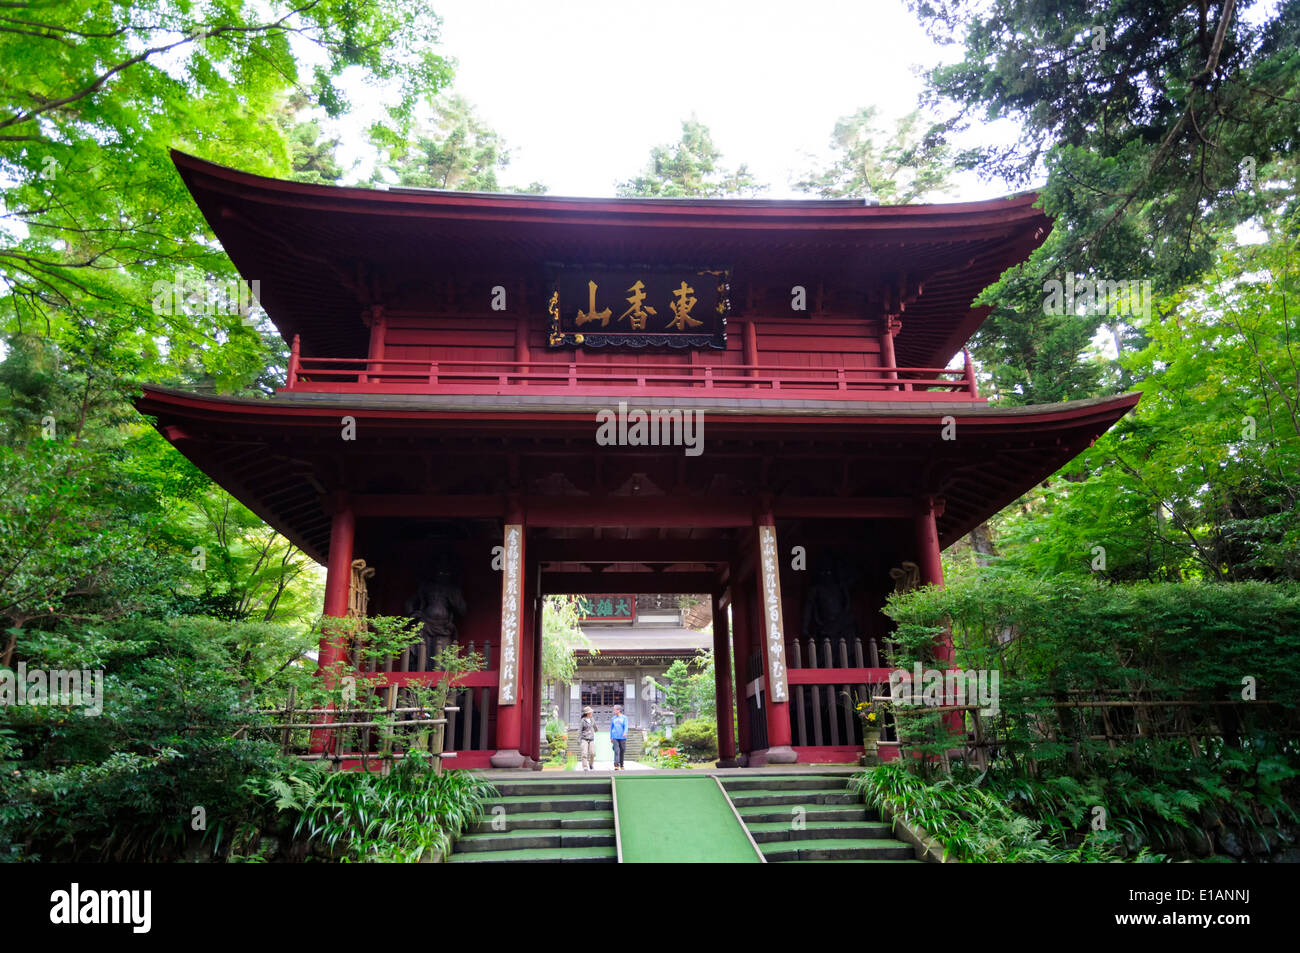 Große, beeindruckende alte Holztor zu einem Zen-buddhistischen Tempel, Japan (japanische Zen-Buddhismus). Stockfoto